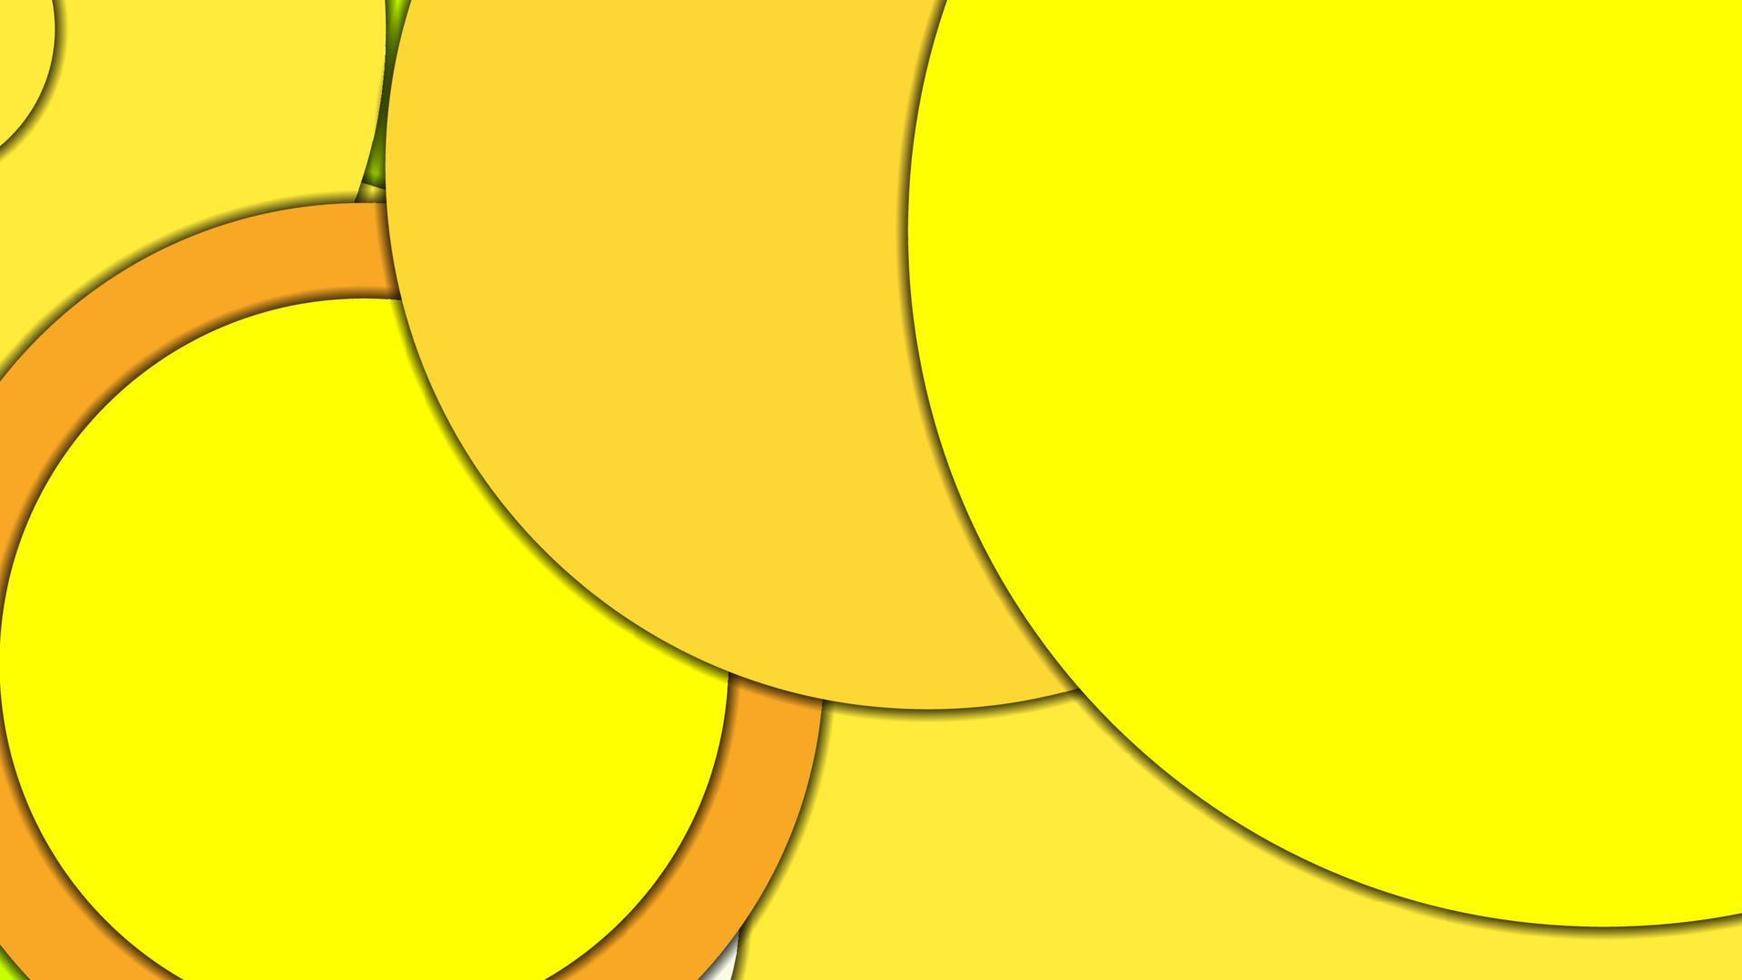 fondo vectorial geométrico abstracto en estilo de diseño de materiales con una paleta armonizada limitada, con círculos concéntricos y rectángulos girados con sombras, imitando papel cortado. vector